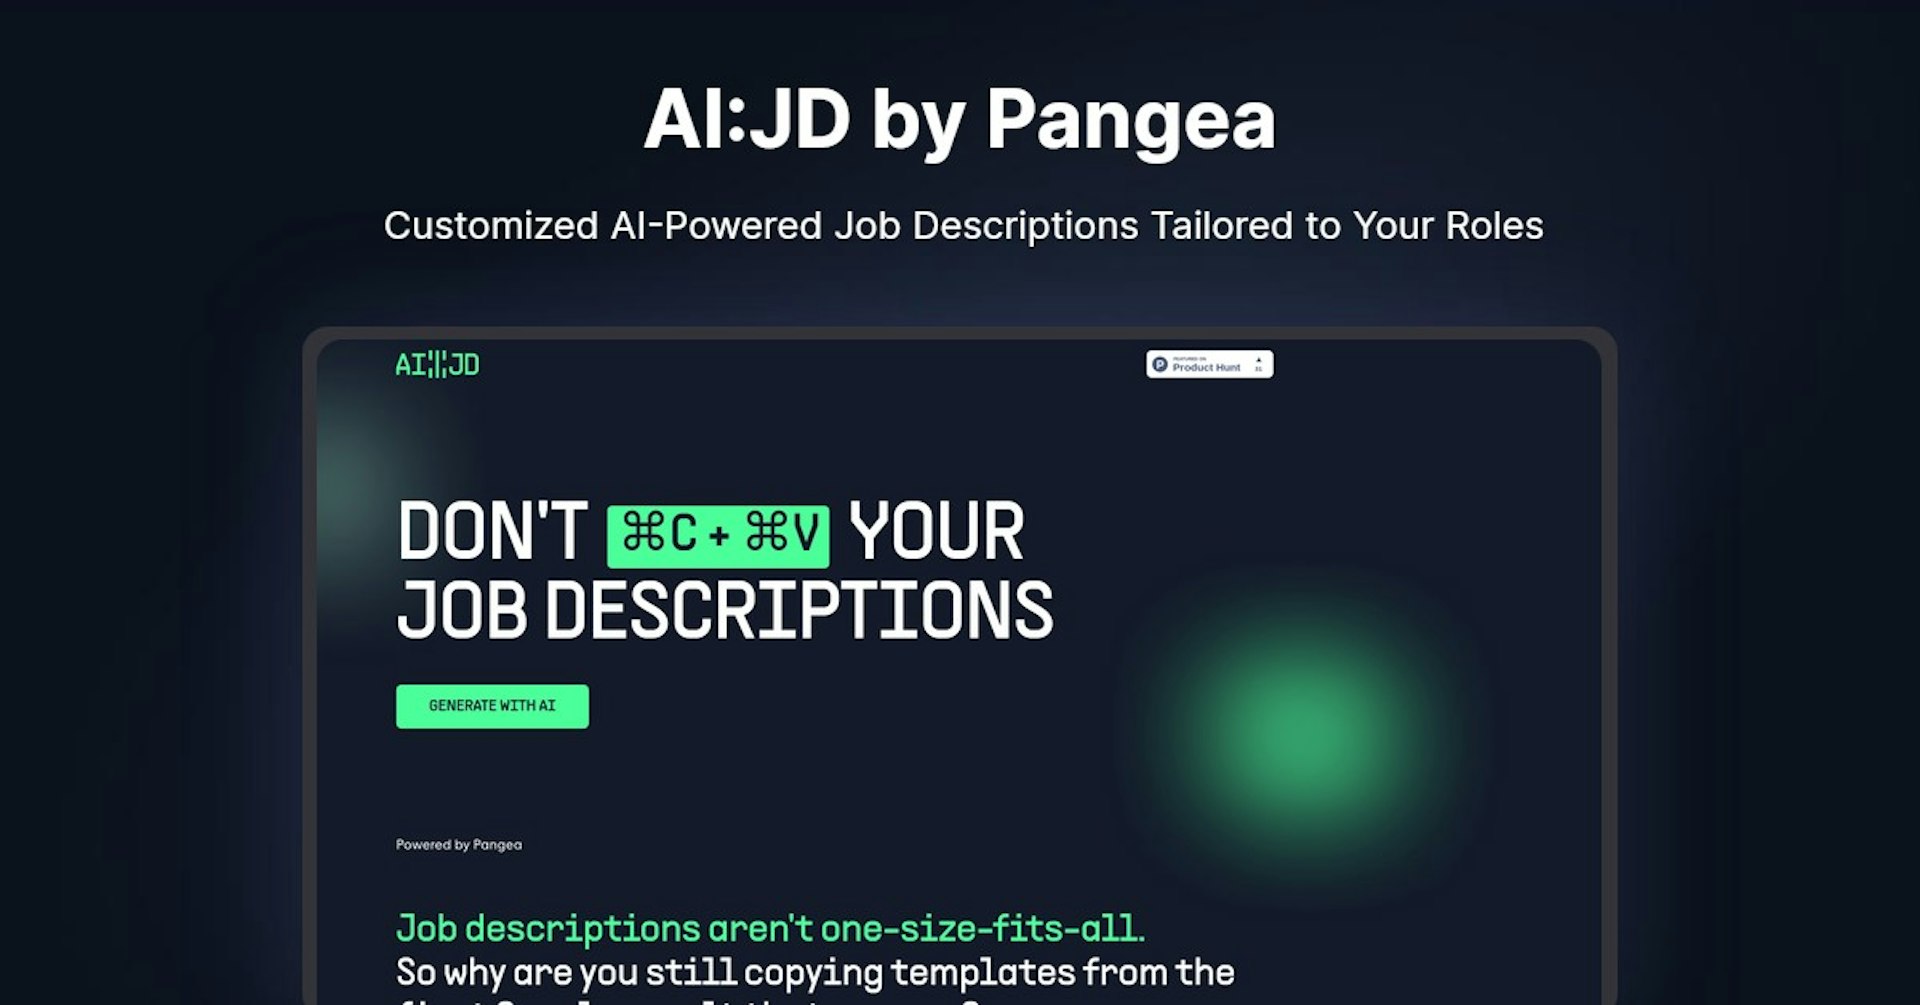 AI:JD by Pangea